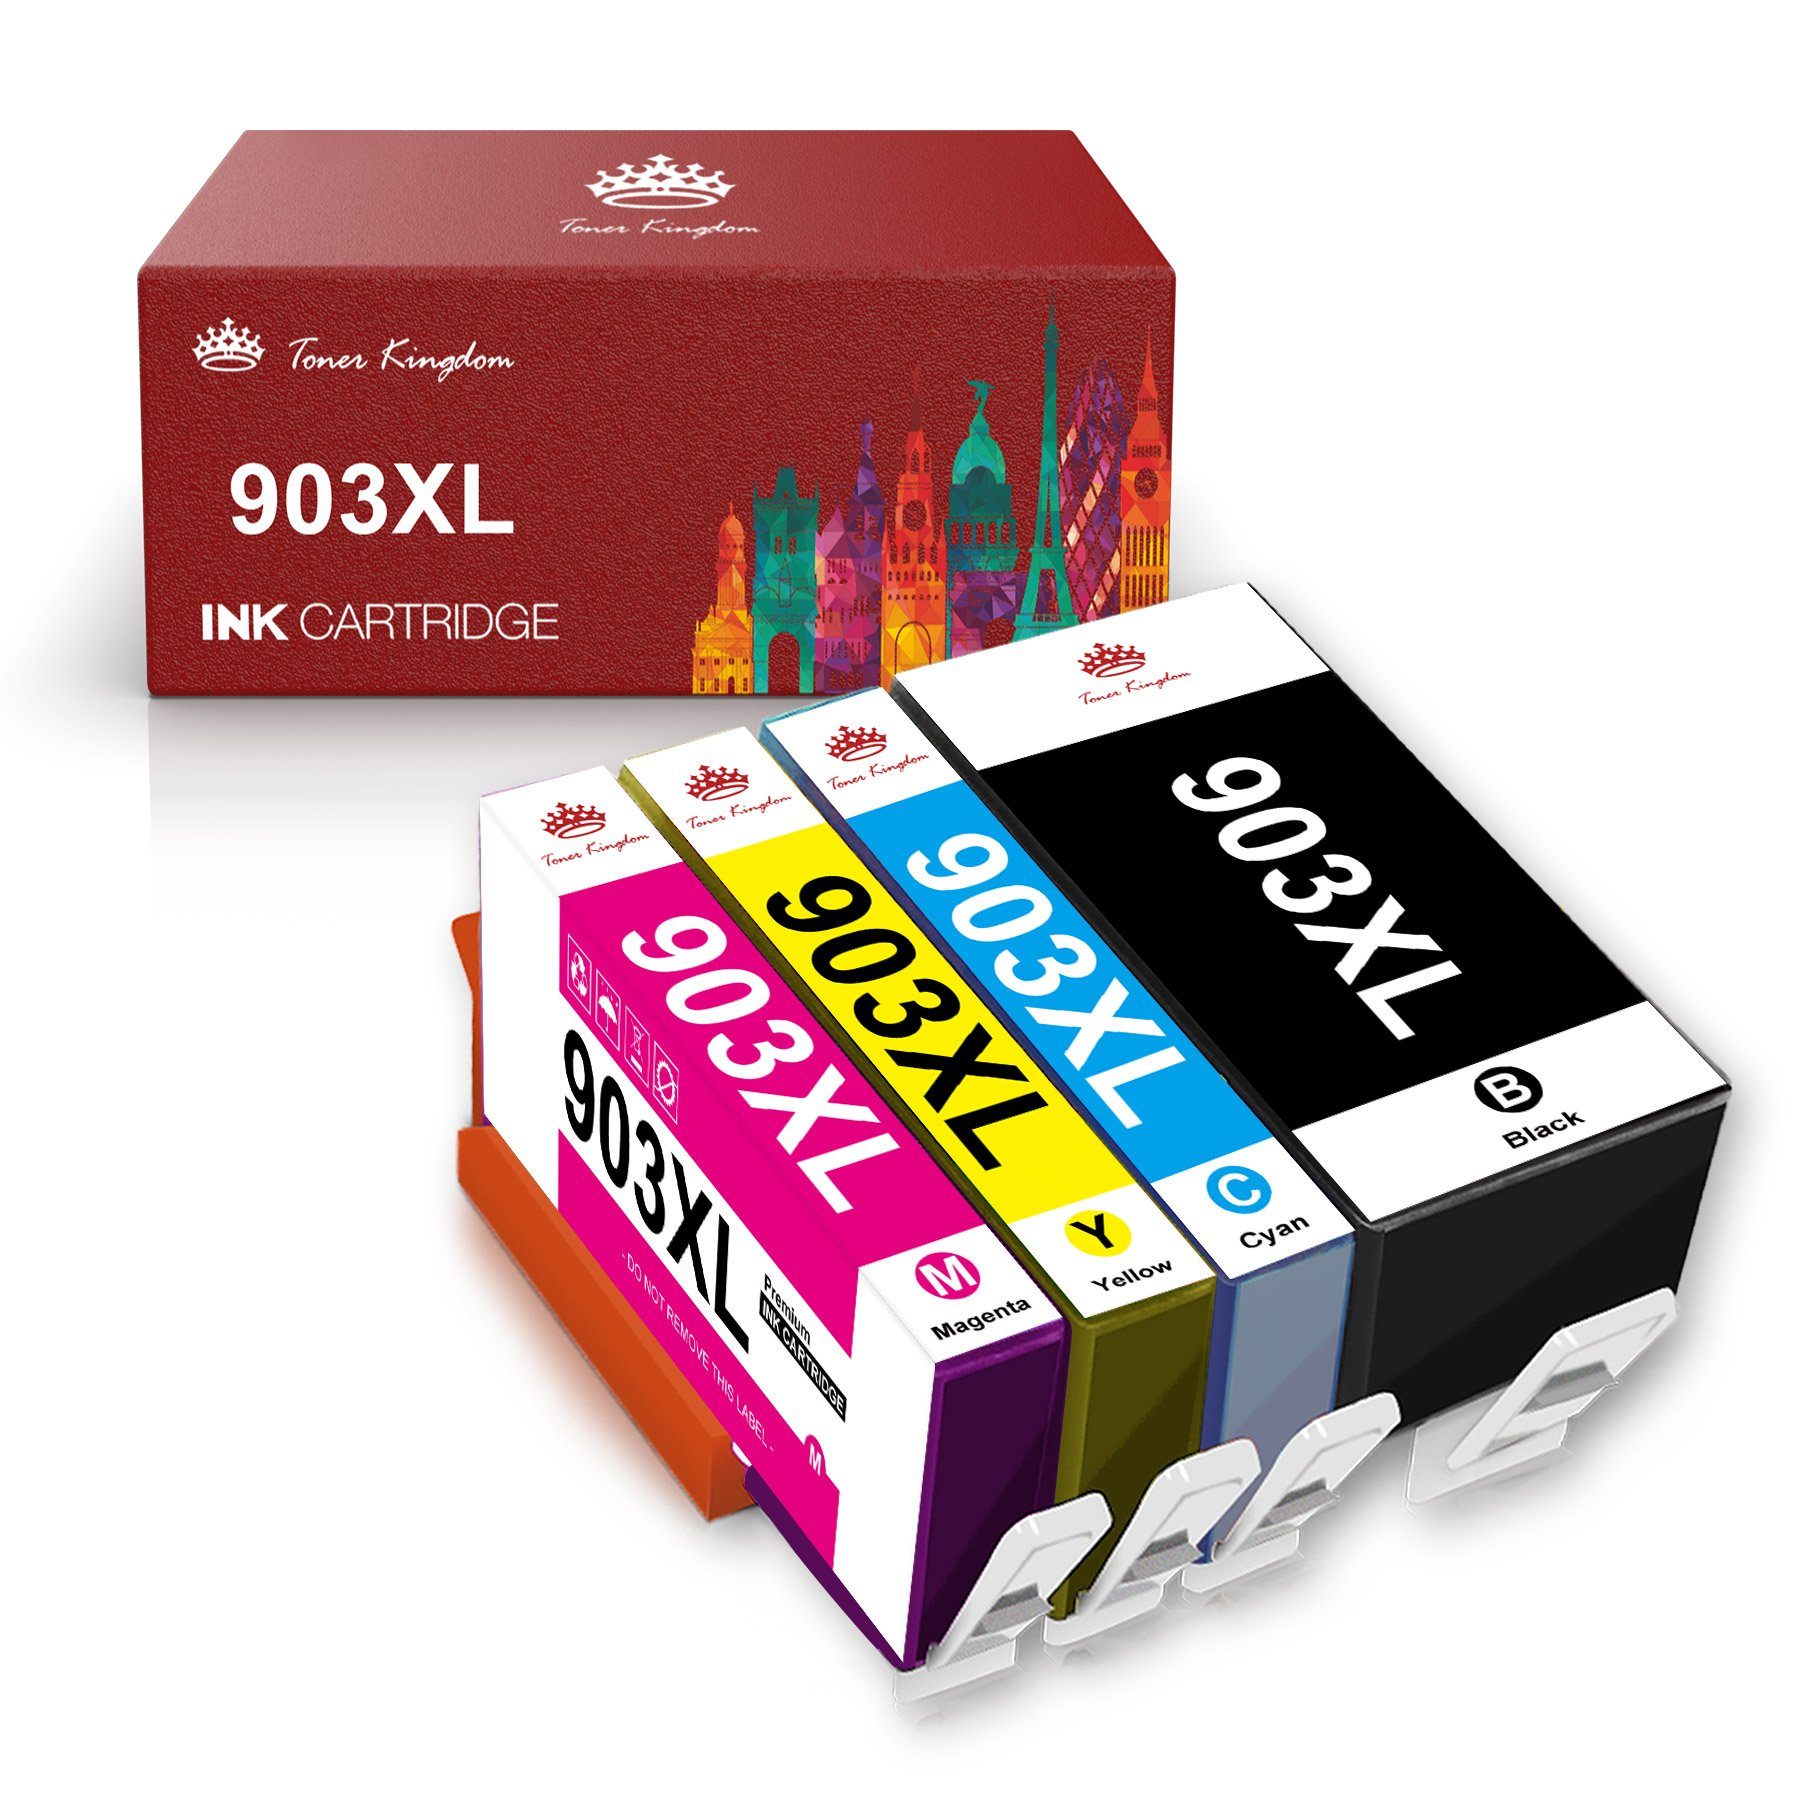 Toner Kingdom 903XL Kompatibel für HP 903 XL Officejet 6950 6970 Tintenpatrone